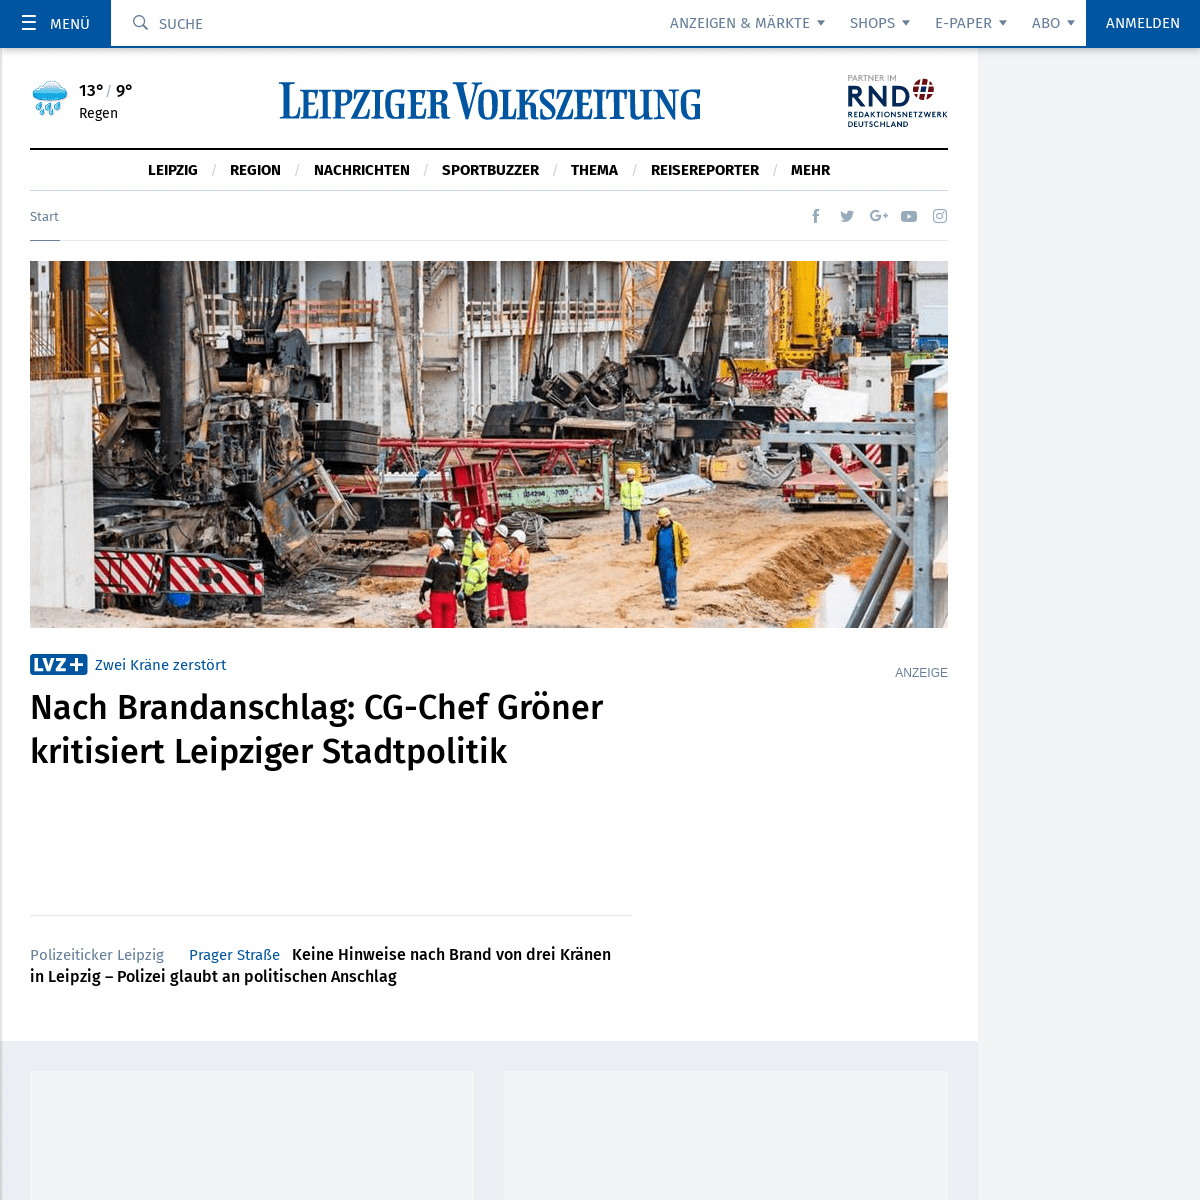 Aktuelle Nachrichten - News aus Leipzig, Sachsen und Mitteldeutschland